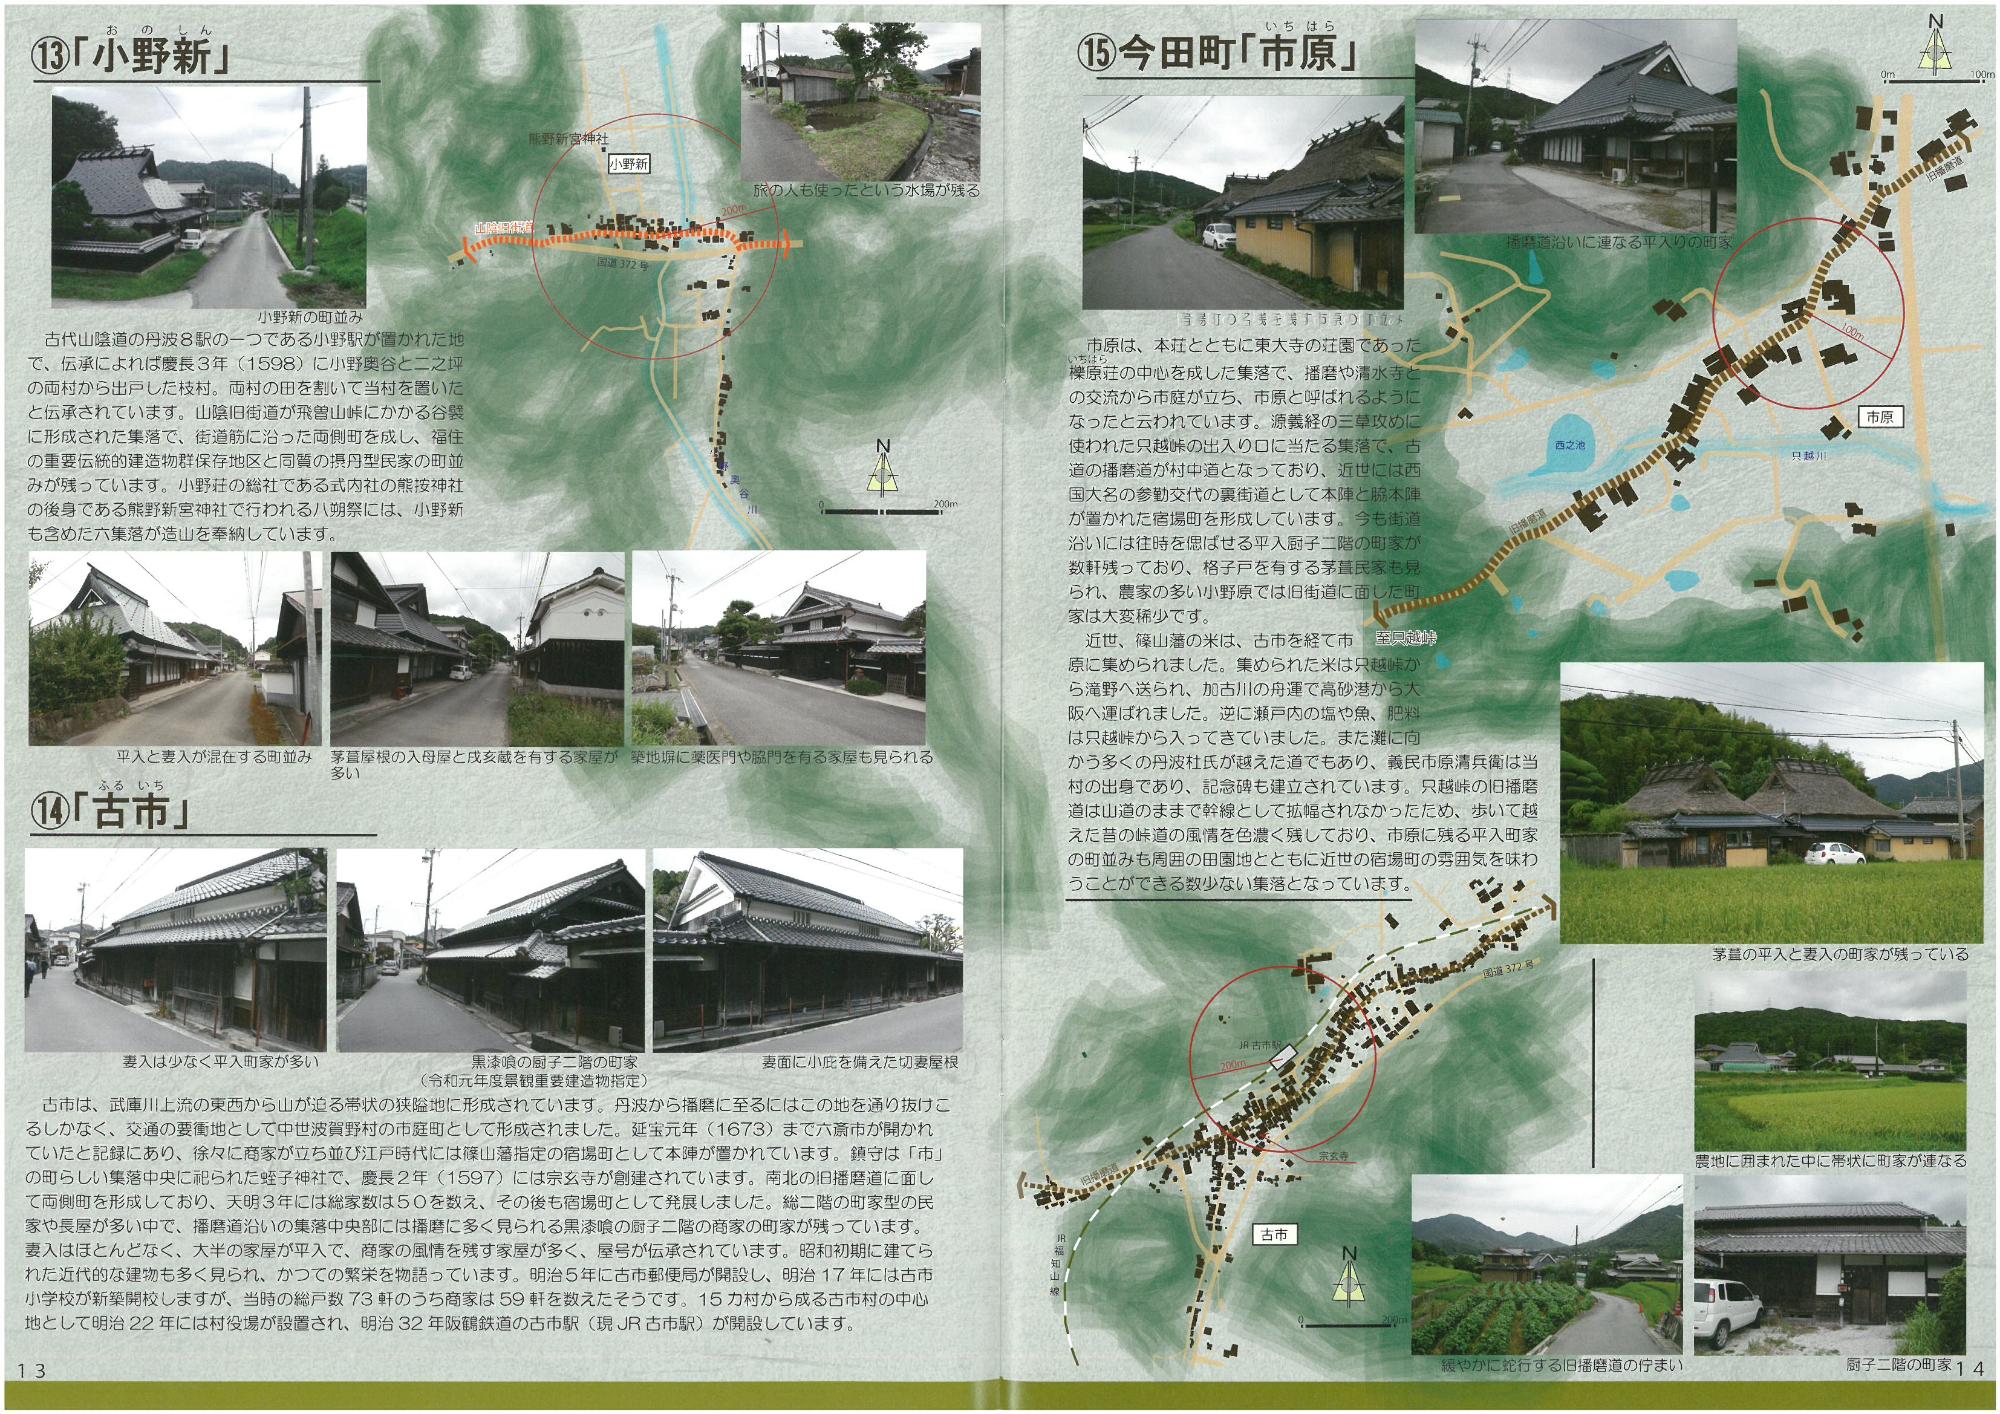 小野新や古市の街道集落の説明をしているページ。